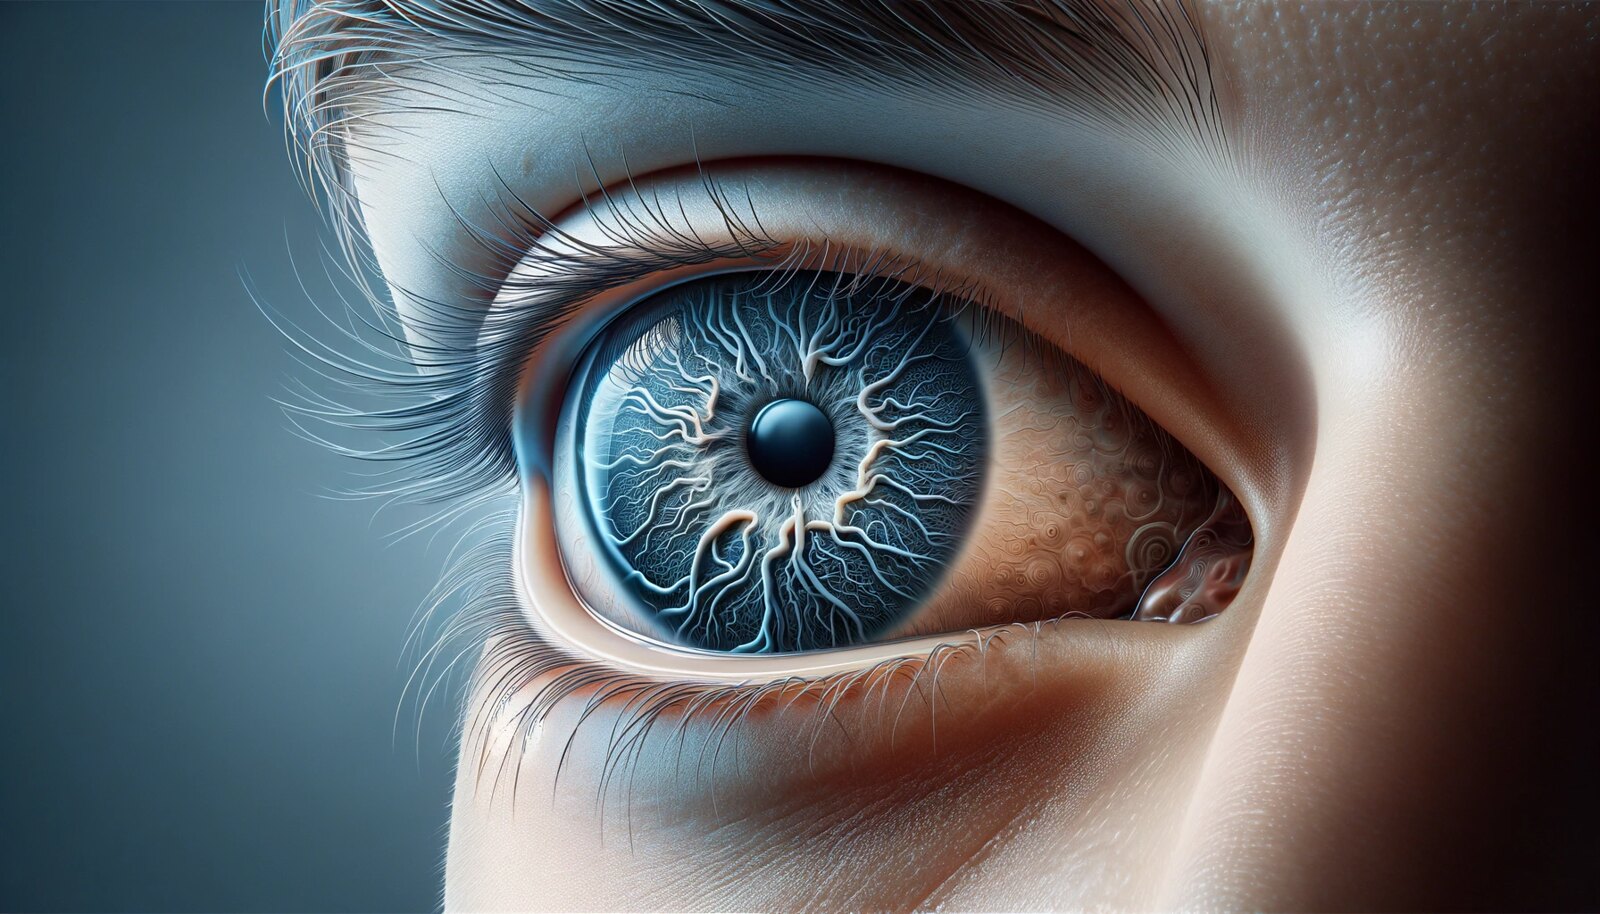 Avance médico: La IA diagnostica autismo en niños a través del análisis retinal